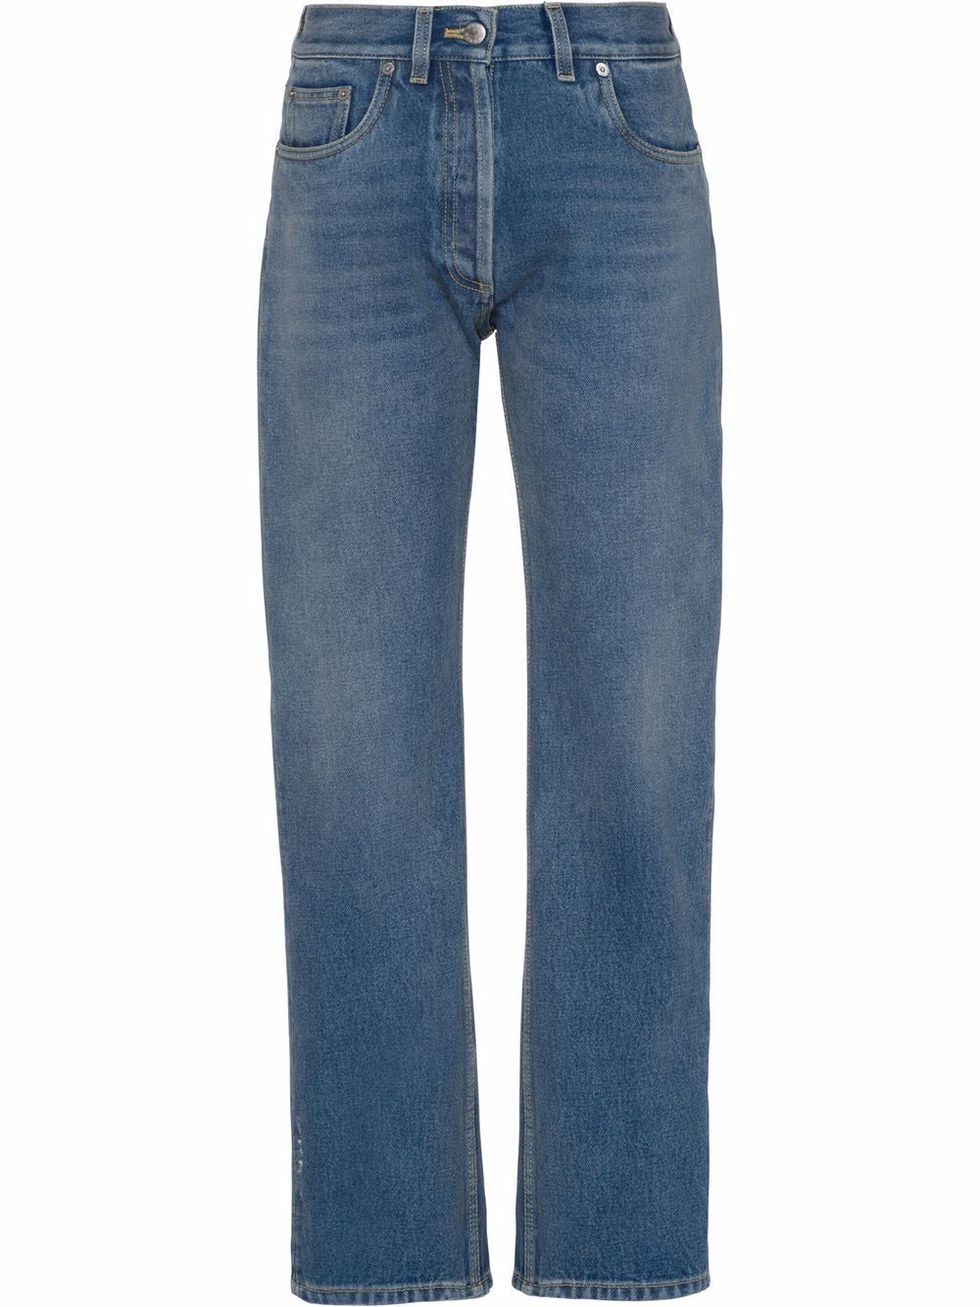 Top denim (jeans) PRADA original